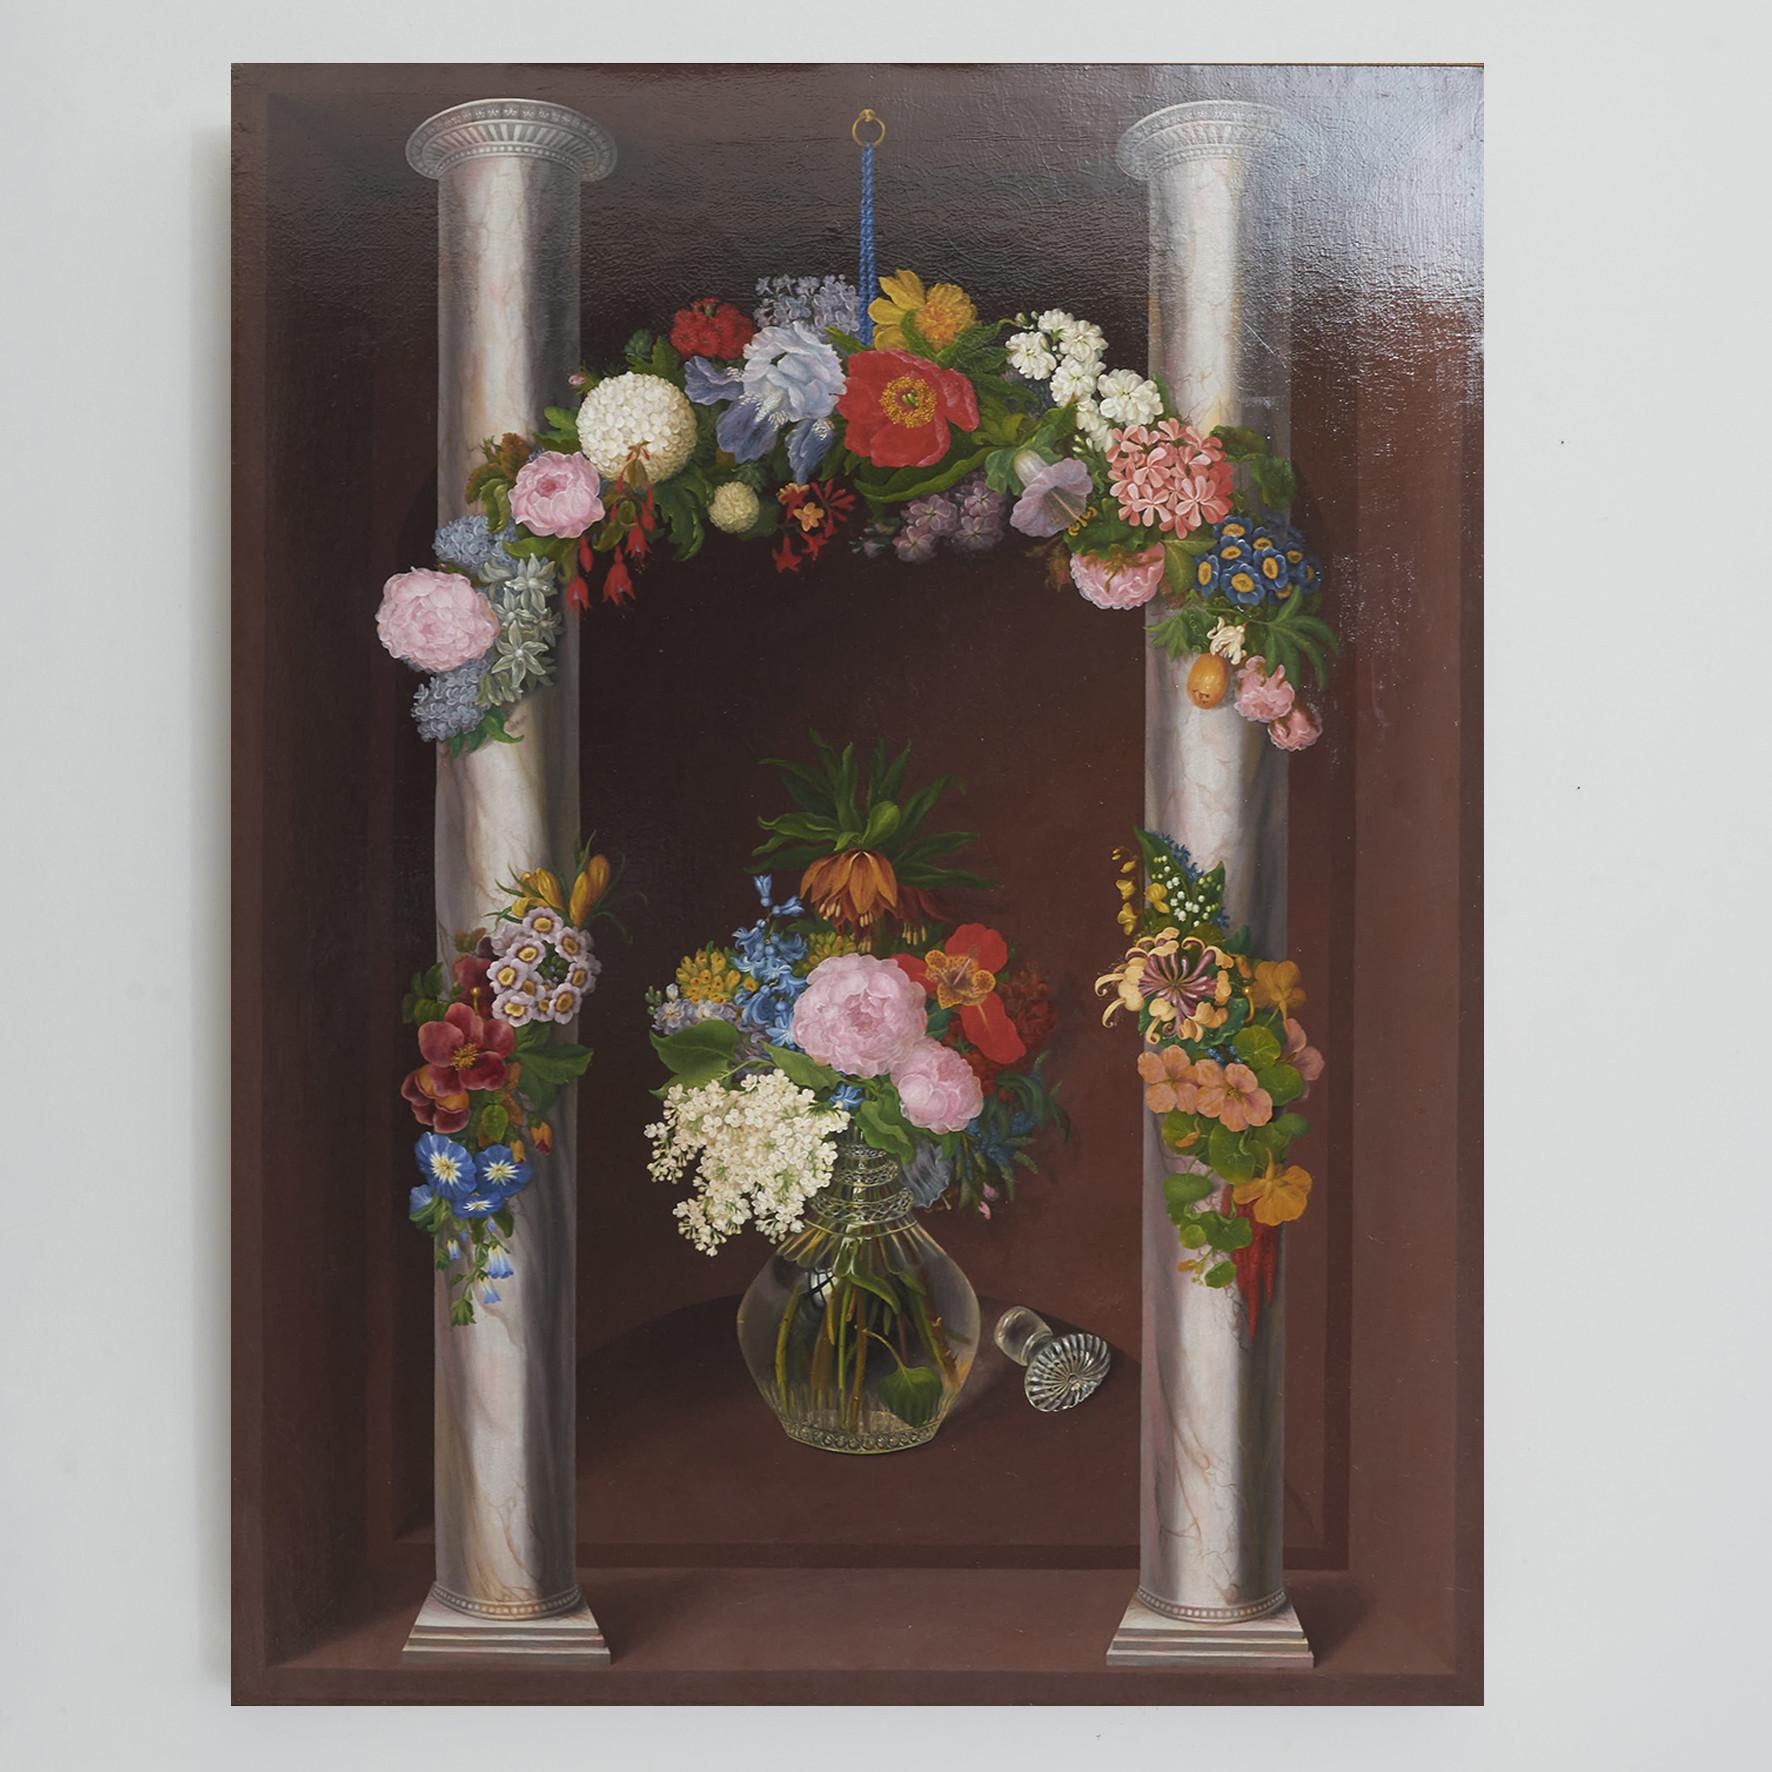 O.A. Hermansen (Oluf August Hermansen), dänischer Maler 1849-1897.
Öl auf Leinwand, unsigniert.
Großes Blumenbild. Klassischer Aufbau mit zwei Säulen und dazwischen hängenden Blumengirlanden mit blauem Seidenband. In der Mitte eine Glaskaraffe mit